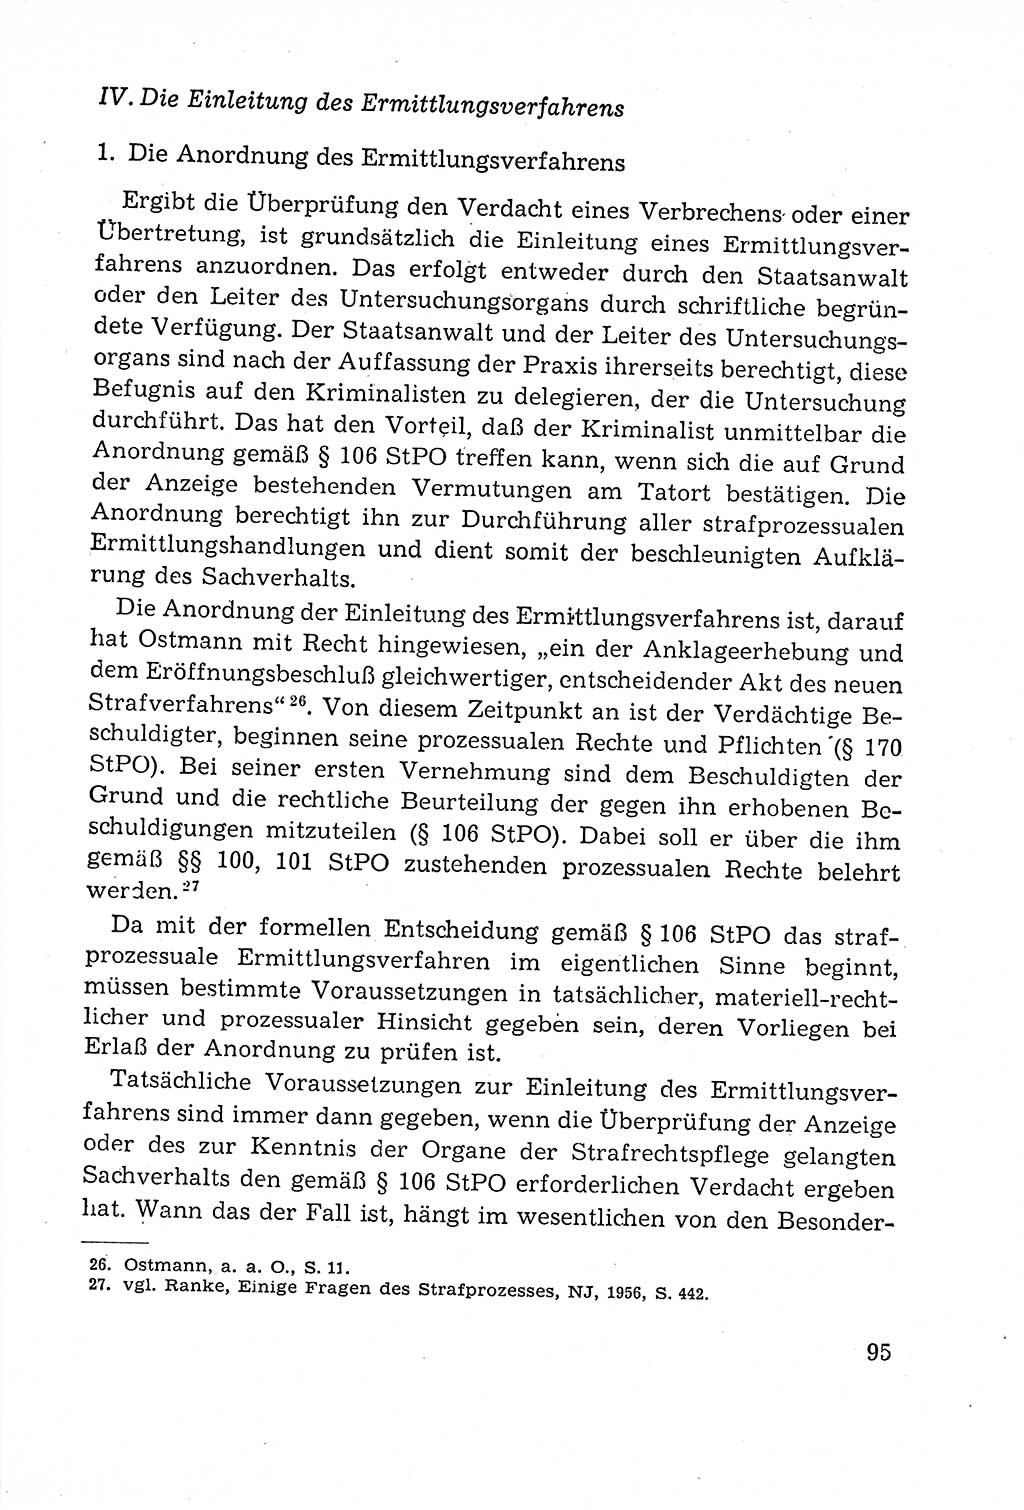 Leitfaden des Strafprozeßrechts der Deutschen Demokratischen Republik (DDR) 1959, Seite 95 (LF StPR DDR 1959, S. 95)